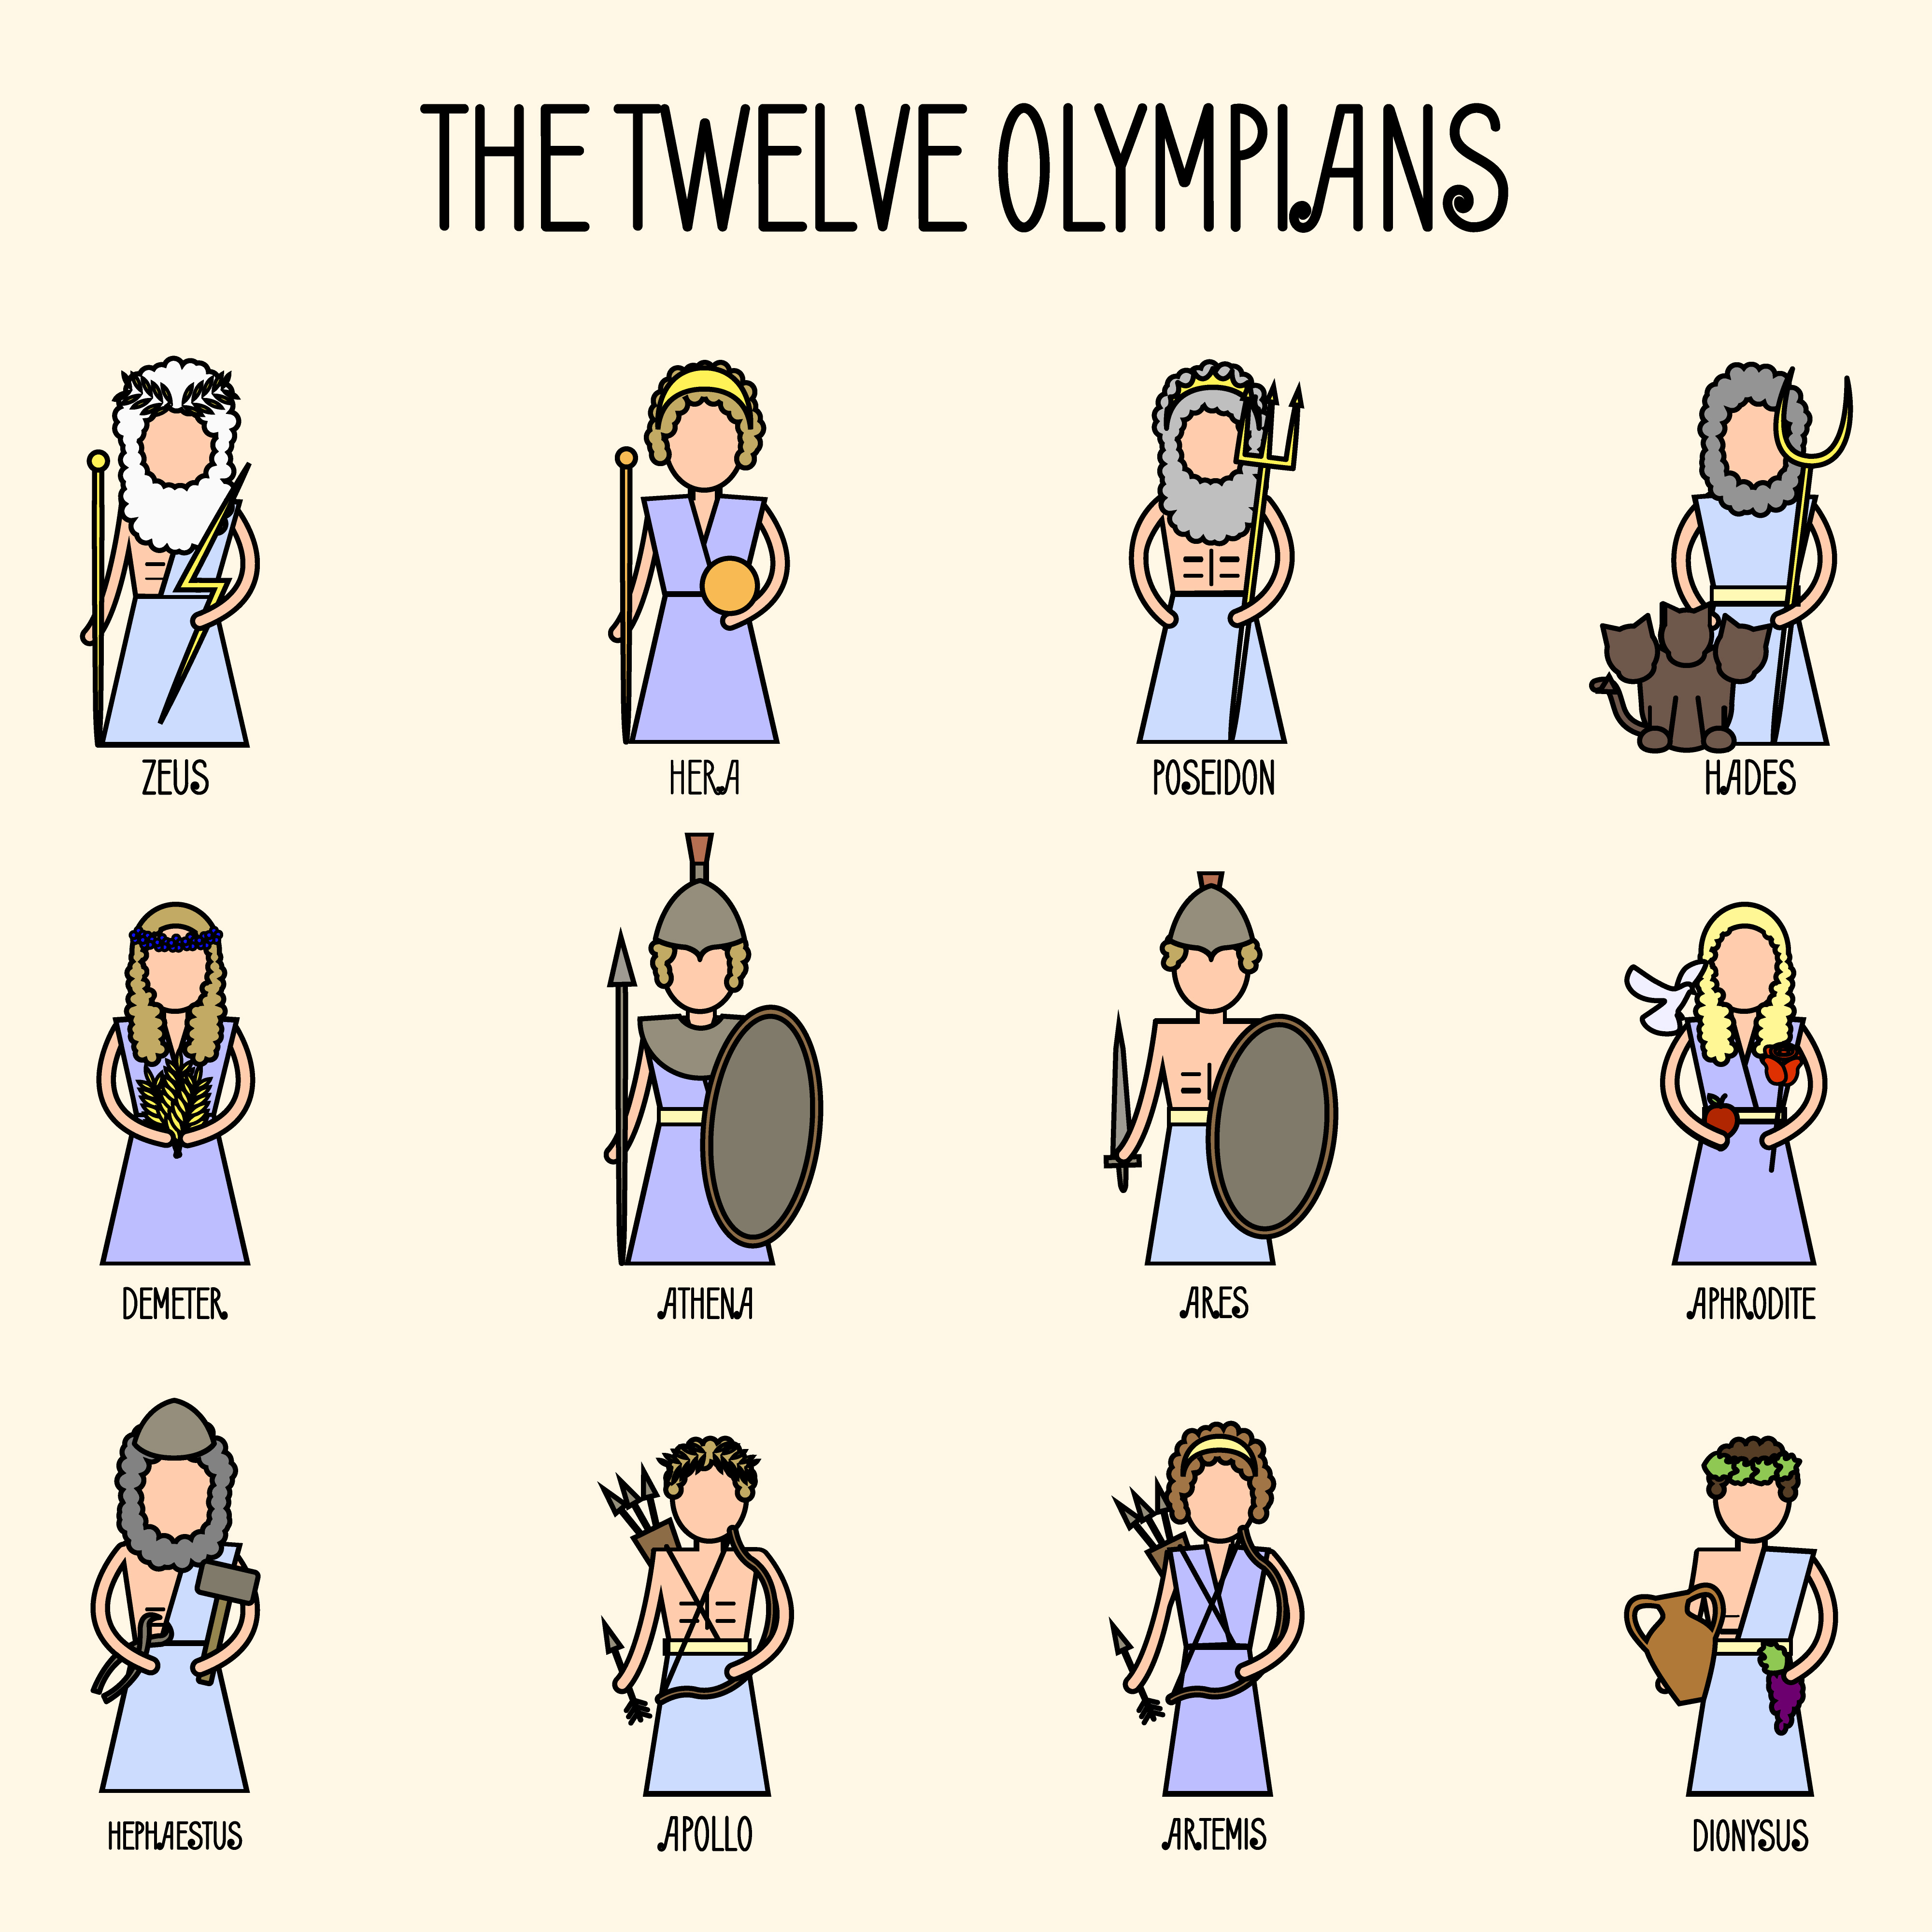 Meet the Twelve Olympians